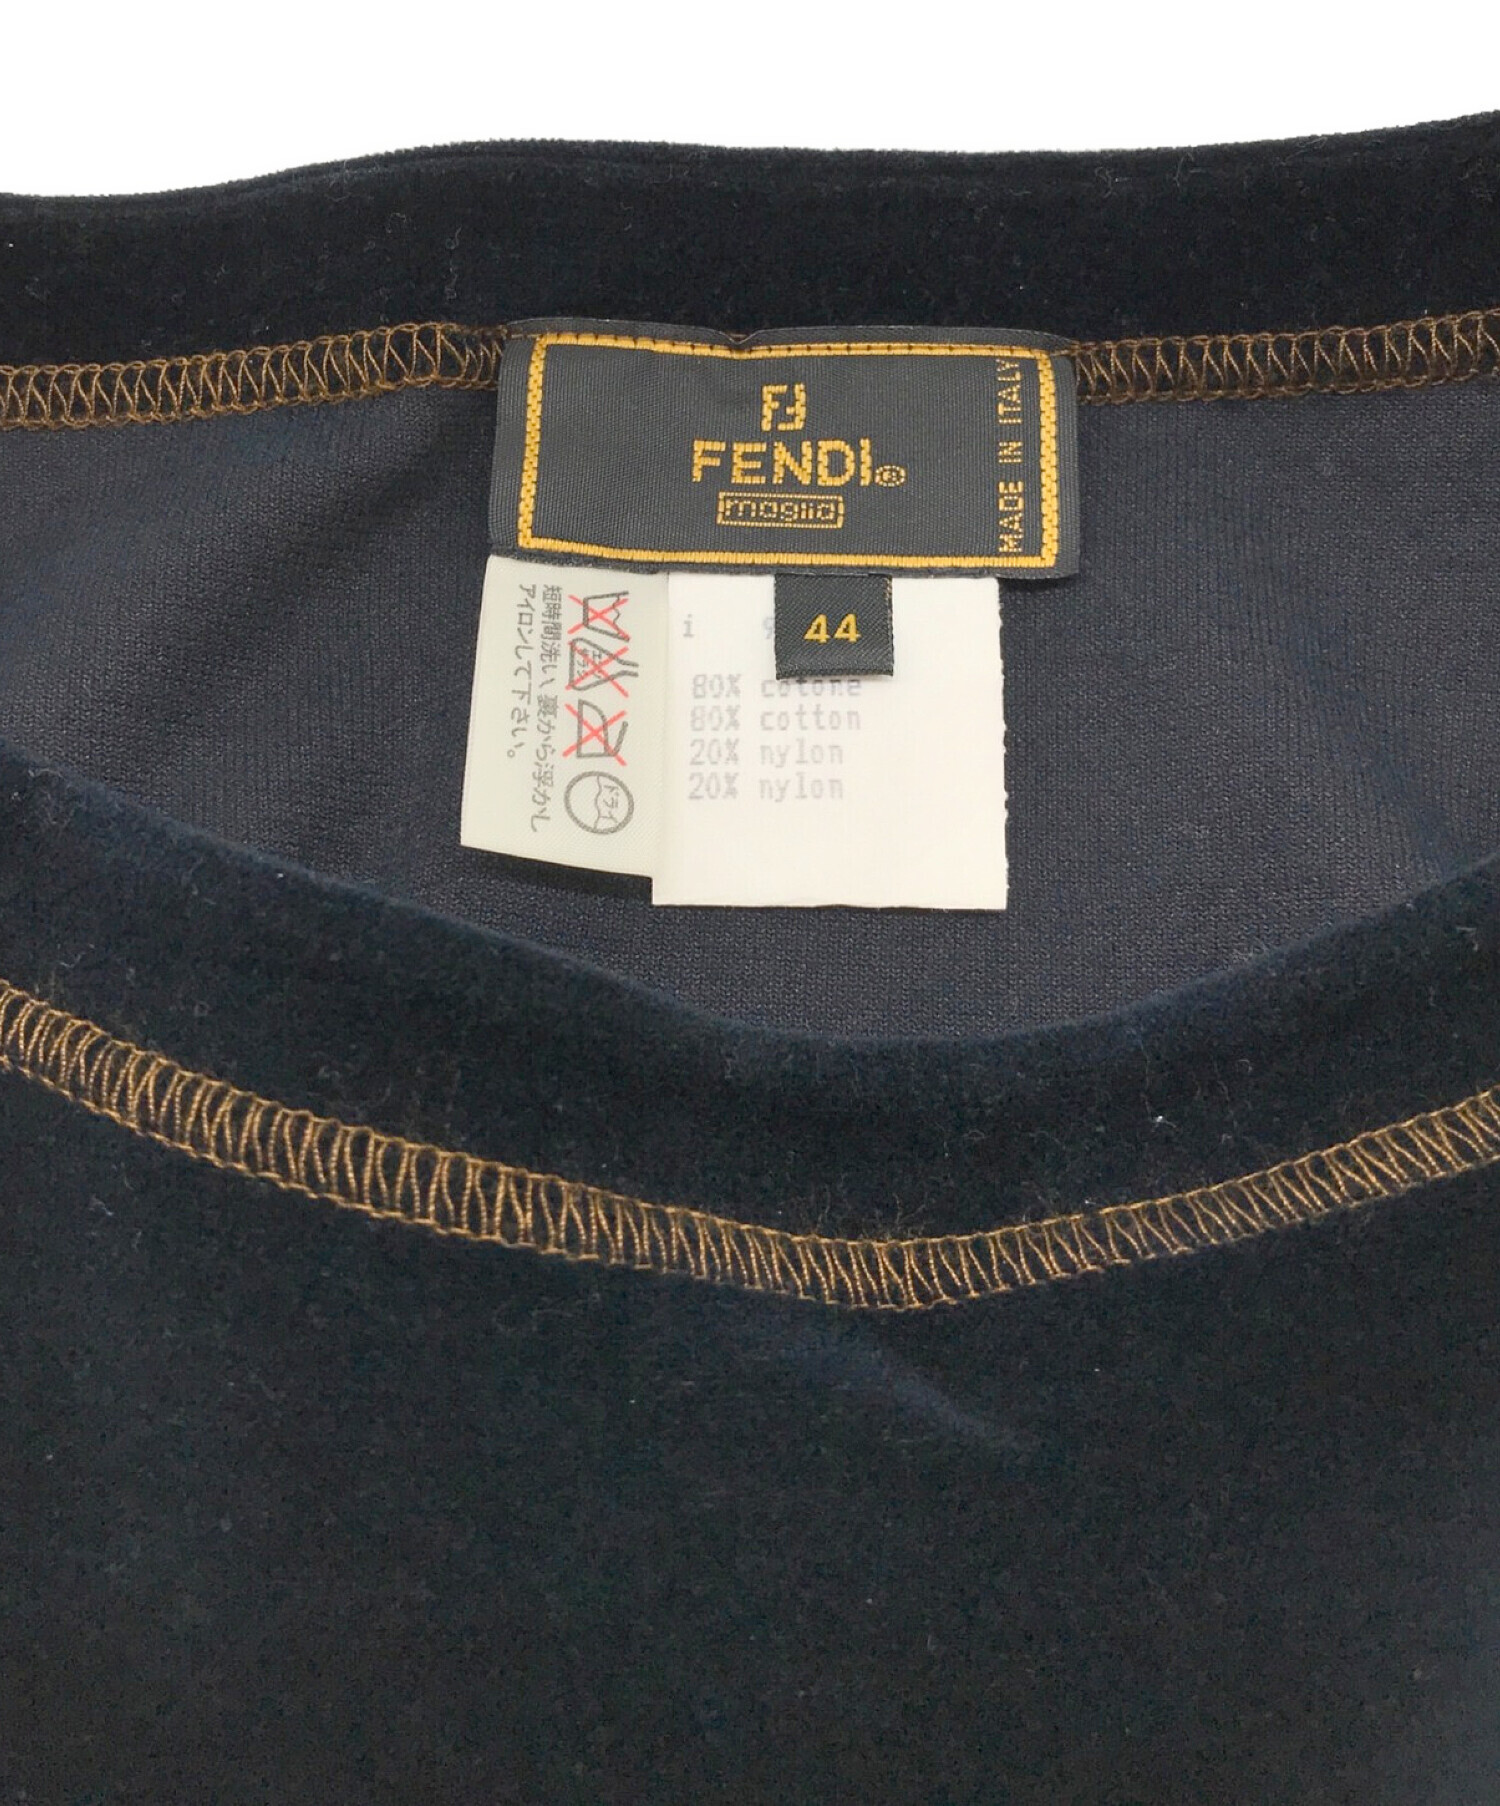 FENDI (フェンディ) [OLD]FFロゴベロアカットソー ネイビー サイズ:44表記